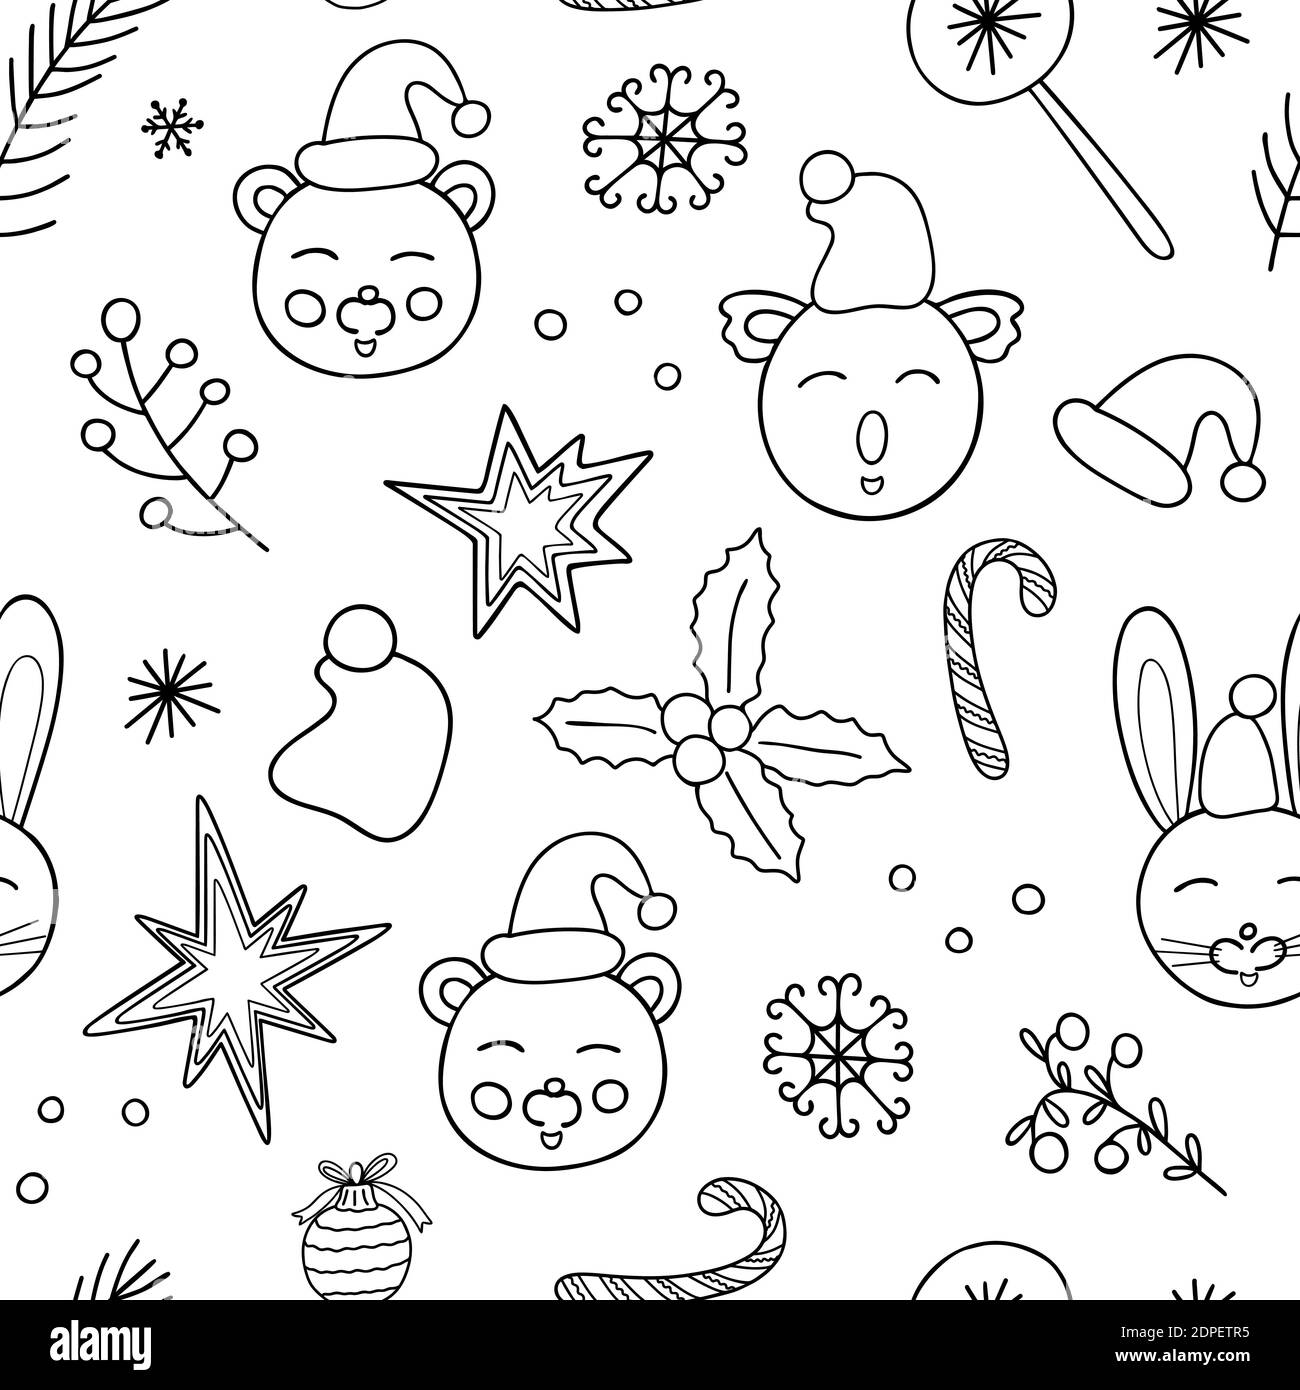 Nette lustige Tiere skizzieren Vektor wiederholen Muster im Doodle-Stil-Set, weihnachten einfache handgezeichnete Zeichen für Winterurlaub Design, Grußkarten, Banner, Stoff Stock Vektor